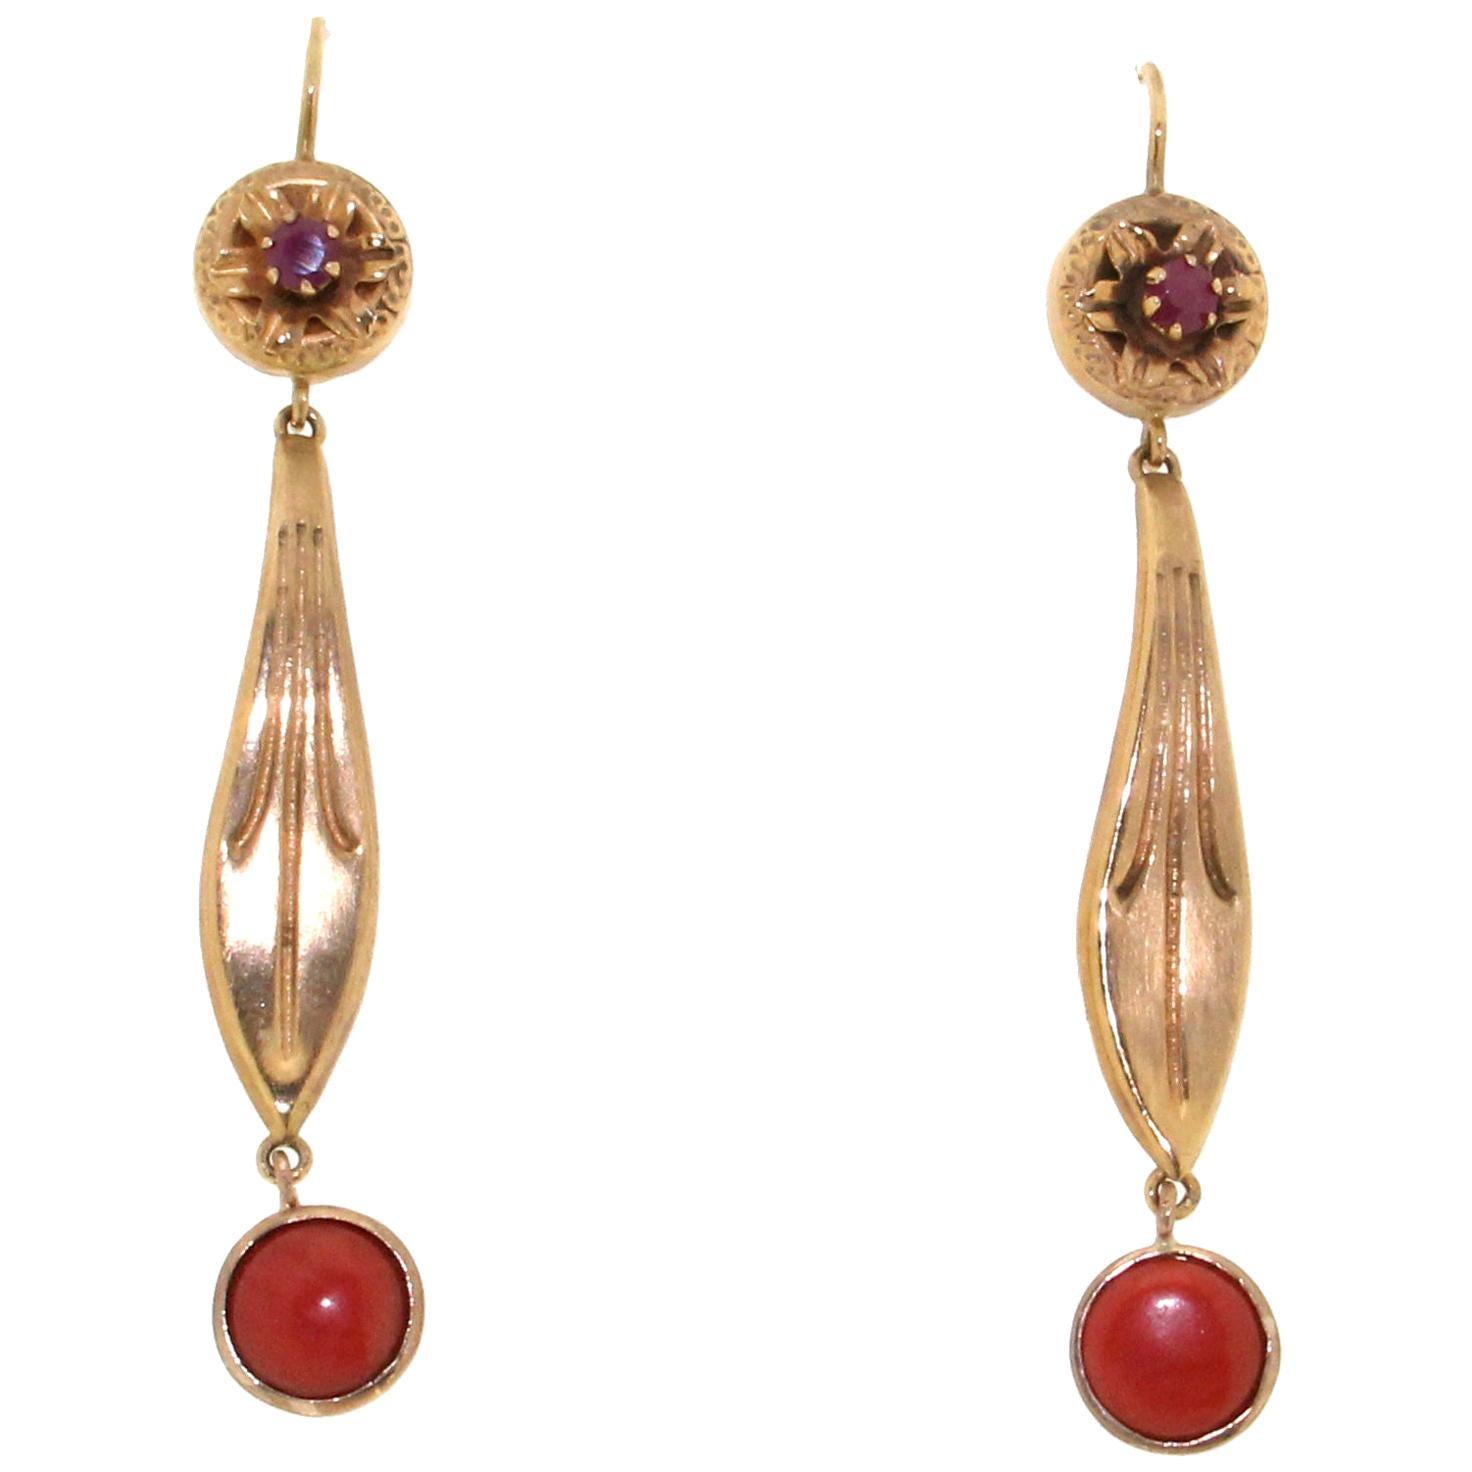 Boucles d'oreilles en goutte en or jaune 9 carats avec corail et rubis, fabrication artisanale